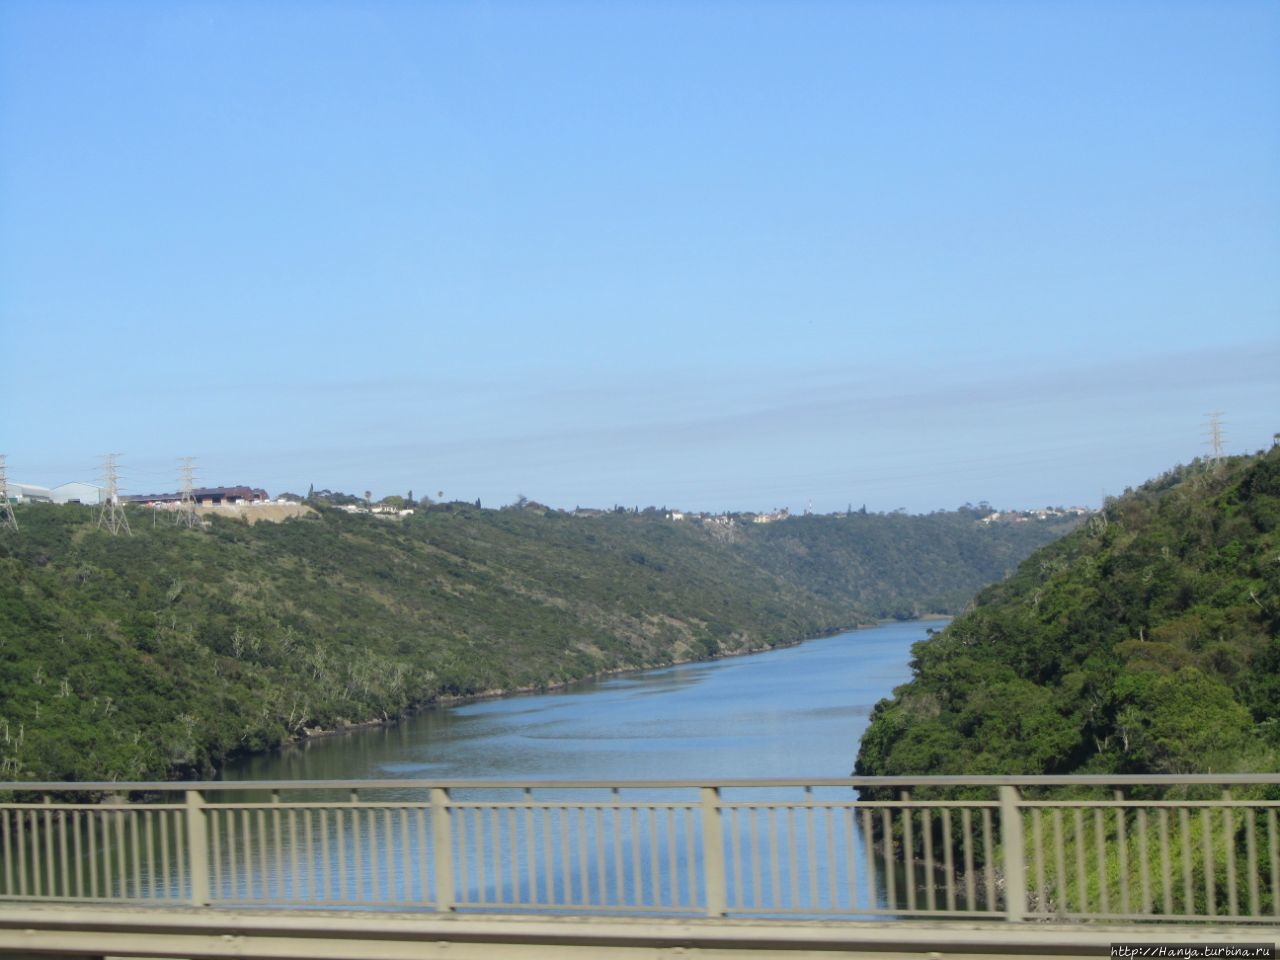 Мосты Порт-Альфреда Порт-Альфред, ЮАР